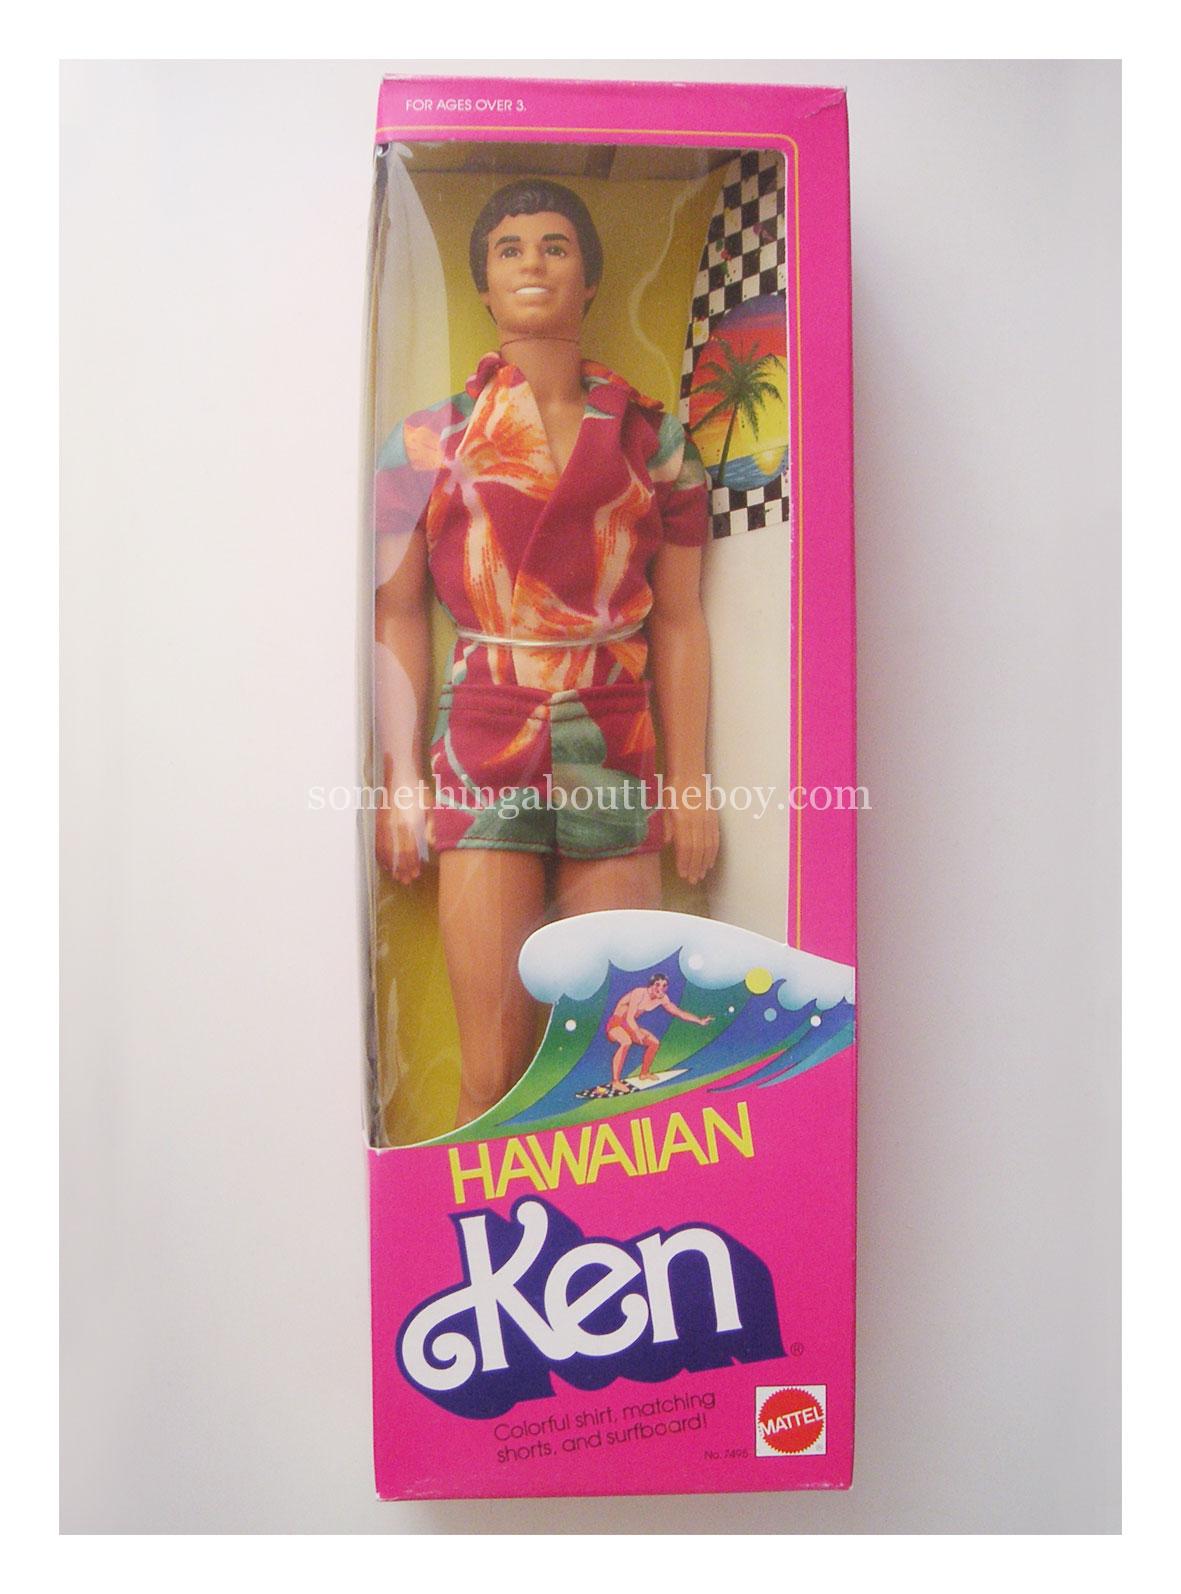 1984 #7495 Hawaiian Ken in original packaging